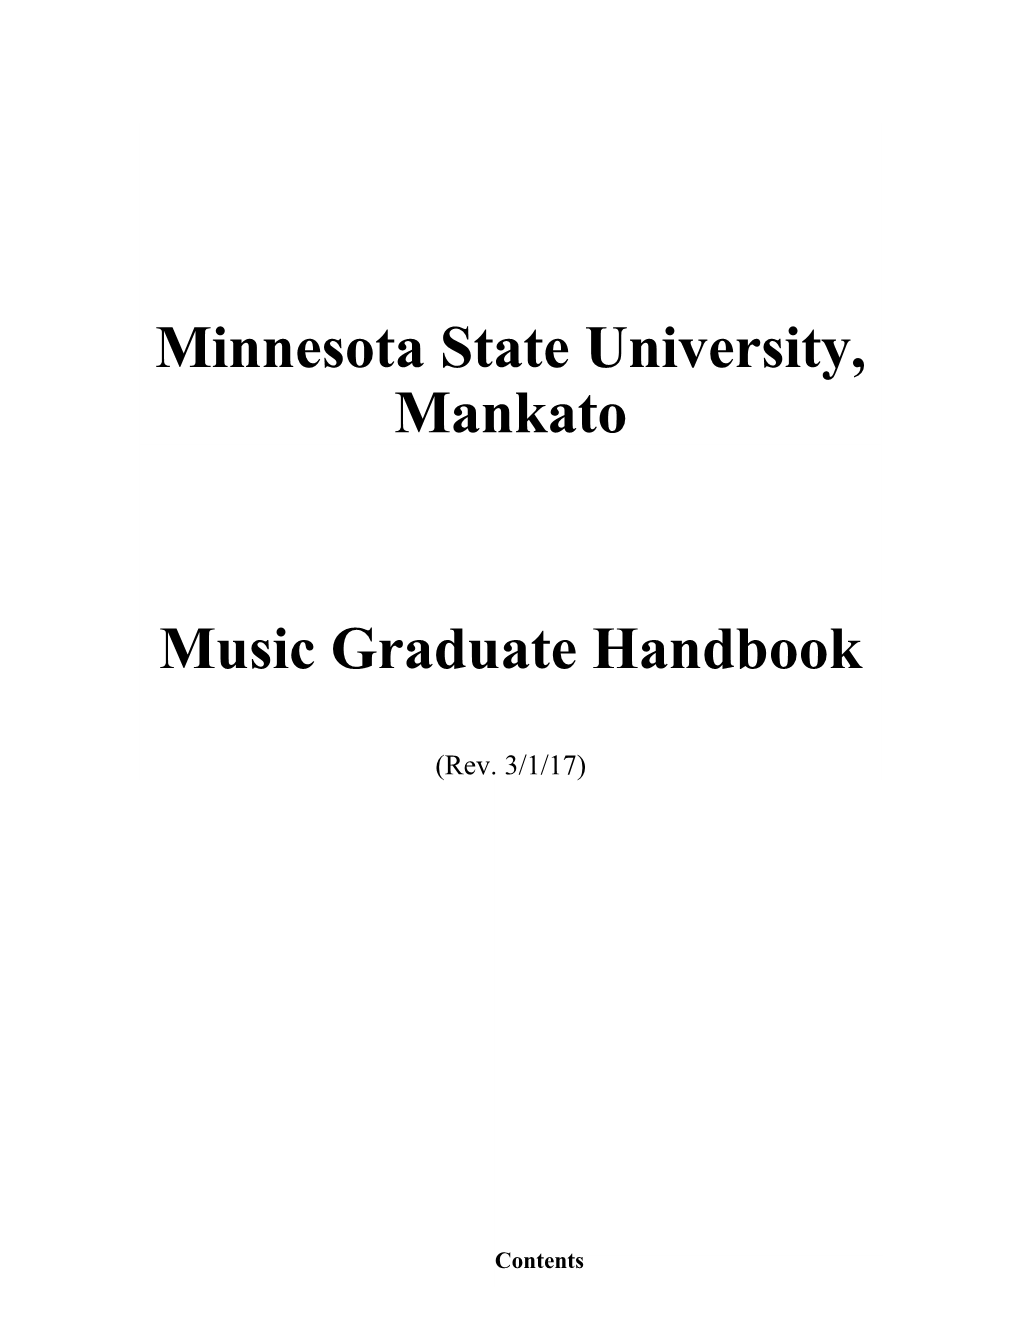 Grad Handbook Revised 2008 4.23.08